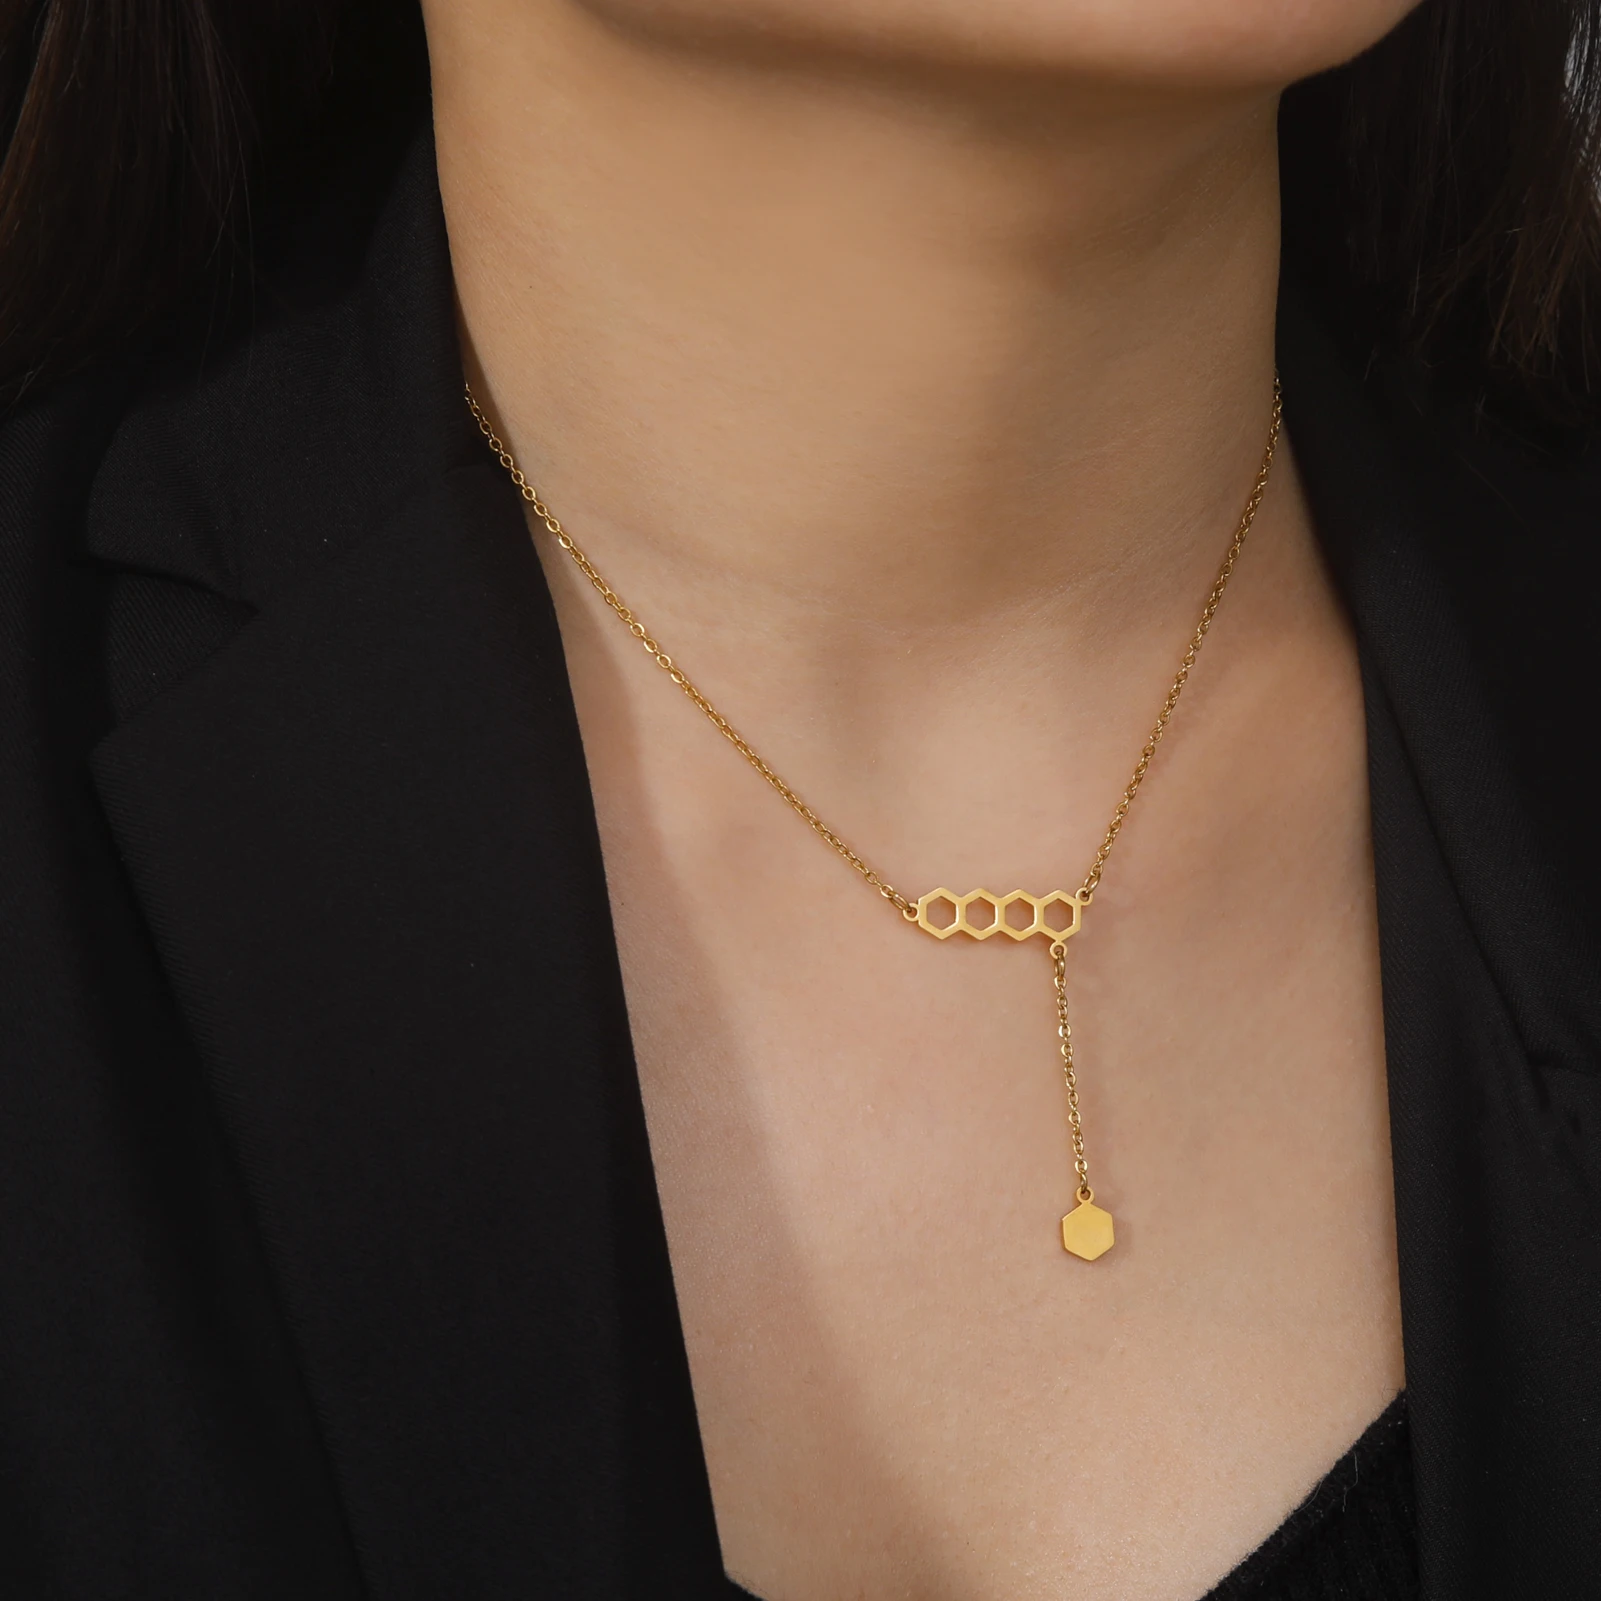 Dreamtimes Шестиугольные параллельные ожерелья с подвесками в виде сот для женщин, новое модное геометрическое ожерелье из нержавеющей стали, ювелирные изделия, подарки Изображение 1